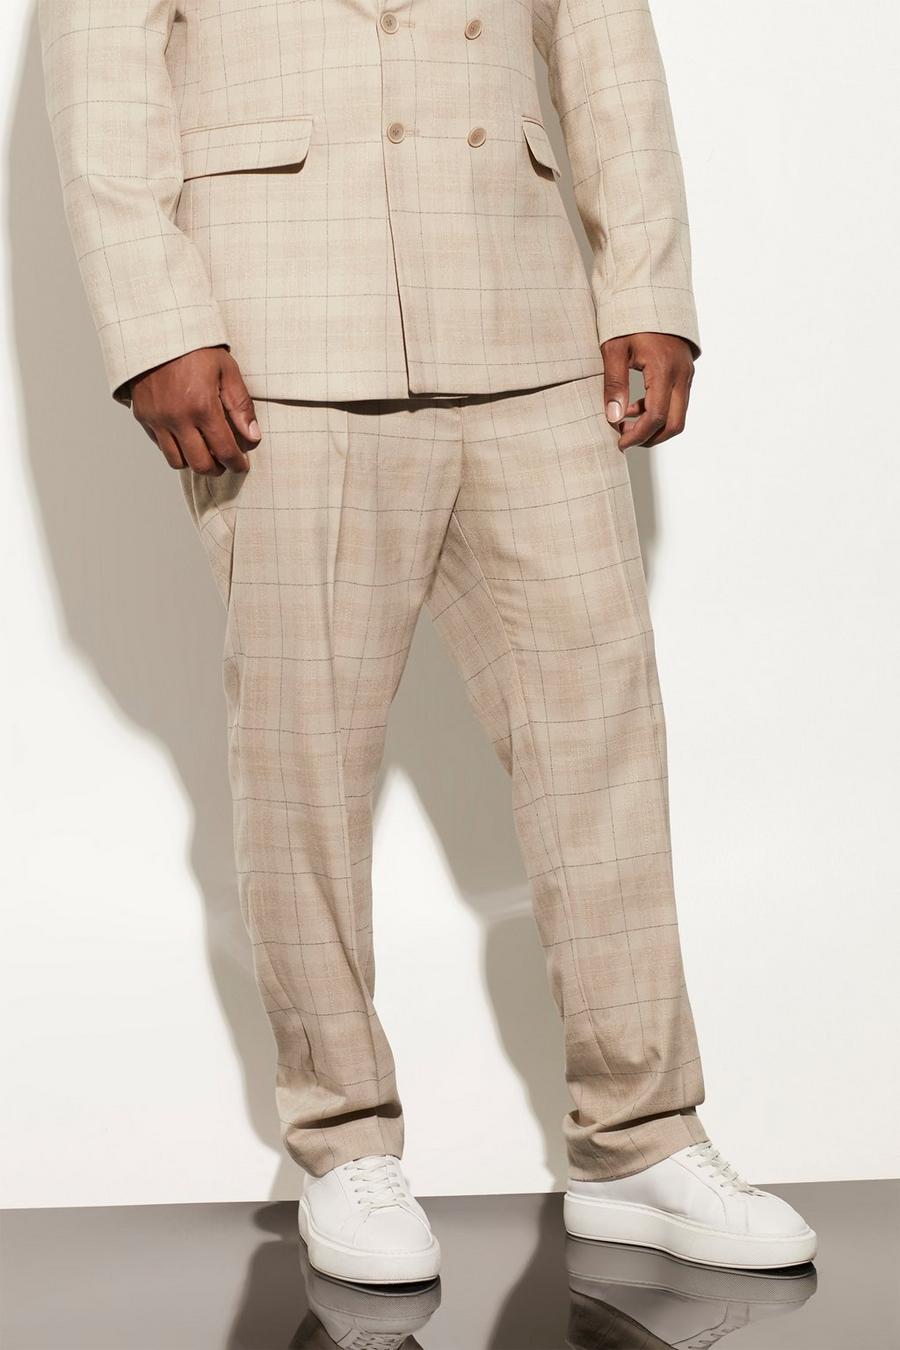 בז' beige מכנסי חליפה סקיני עם הדפס משבצות, מידות גדולות